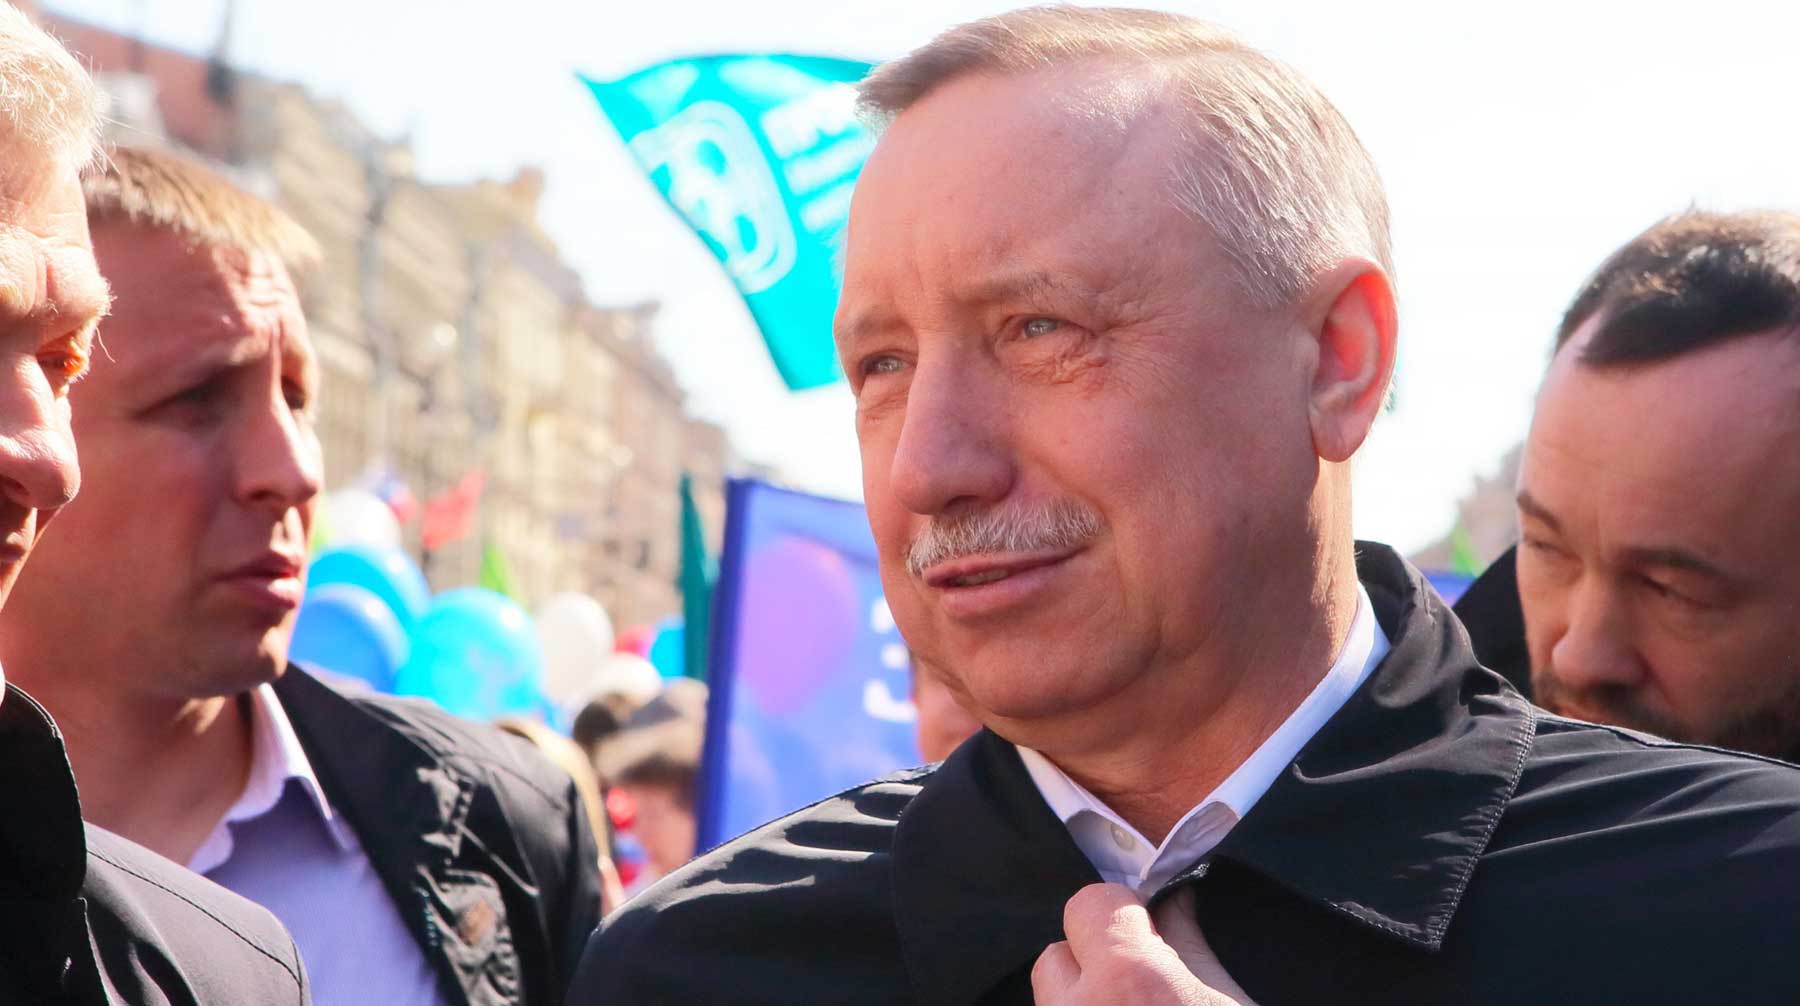 Dailystorm - Беглов объяснил, почему будет участвовать в выборах губернатора Петербурга как самовыдвиженец